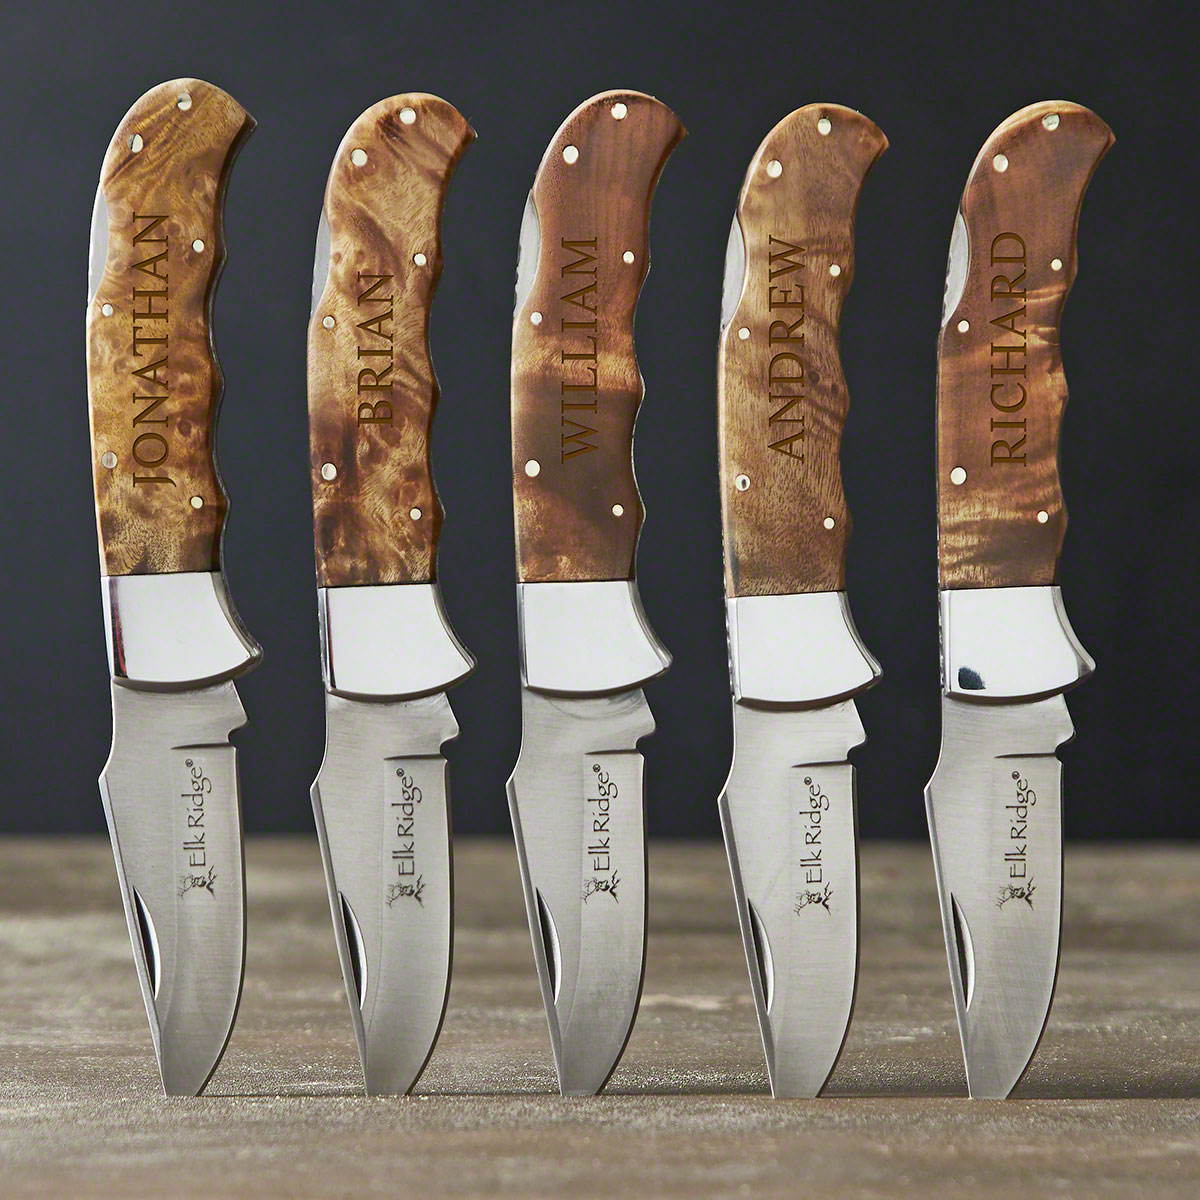 Burl Wood Engraved Pocket Knives - Set of 5 Groomsmen Knife Gifts